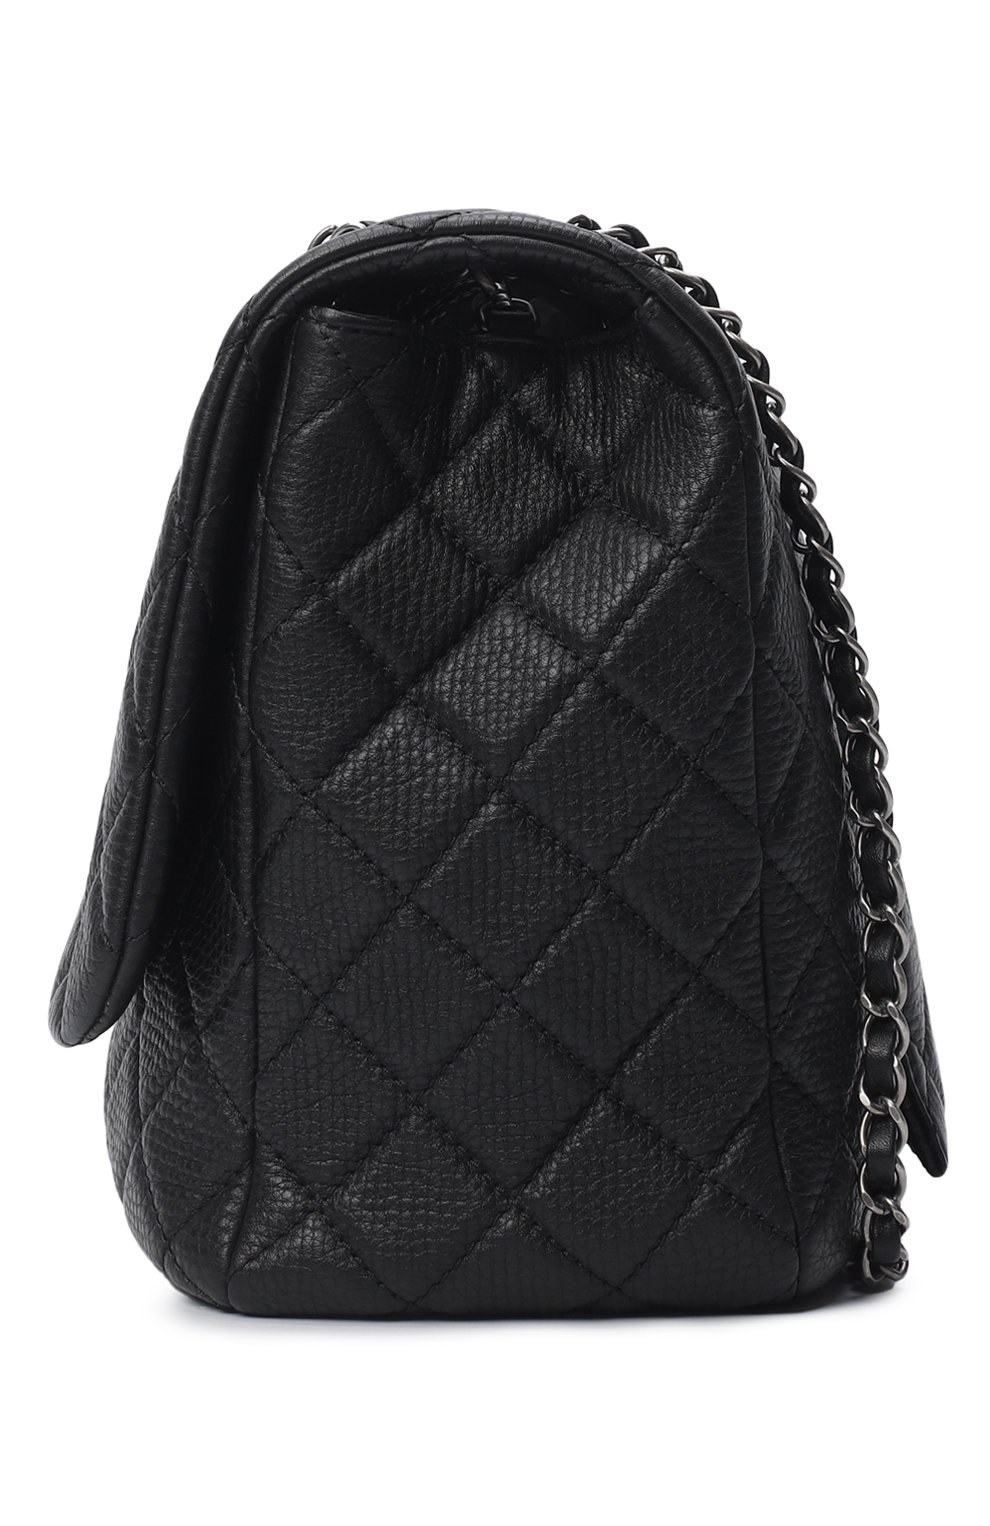 Сумка XXL Classic Bag | Chanel | Чёрный - 3